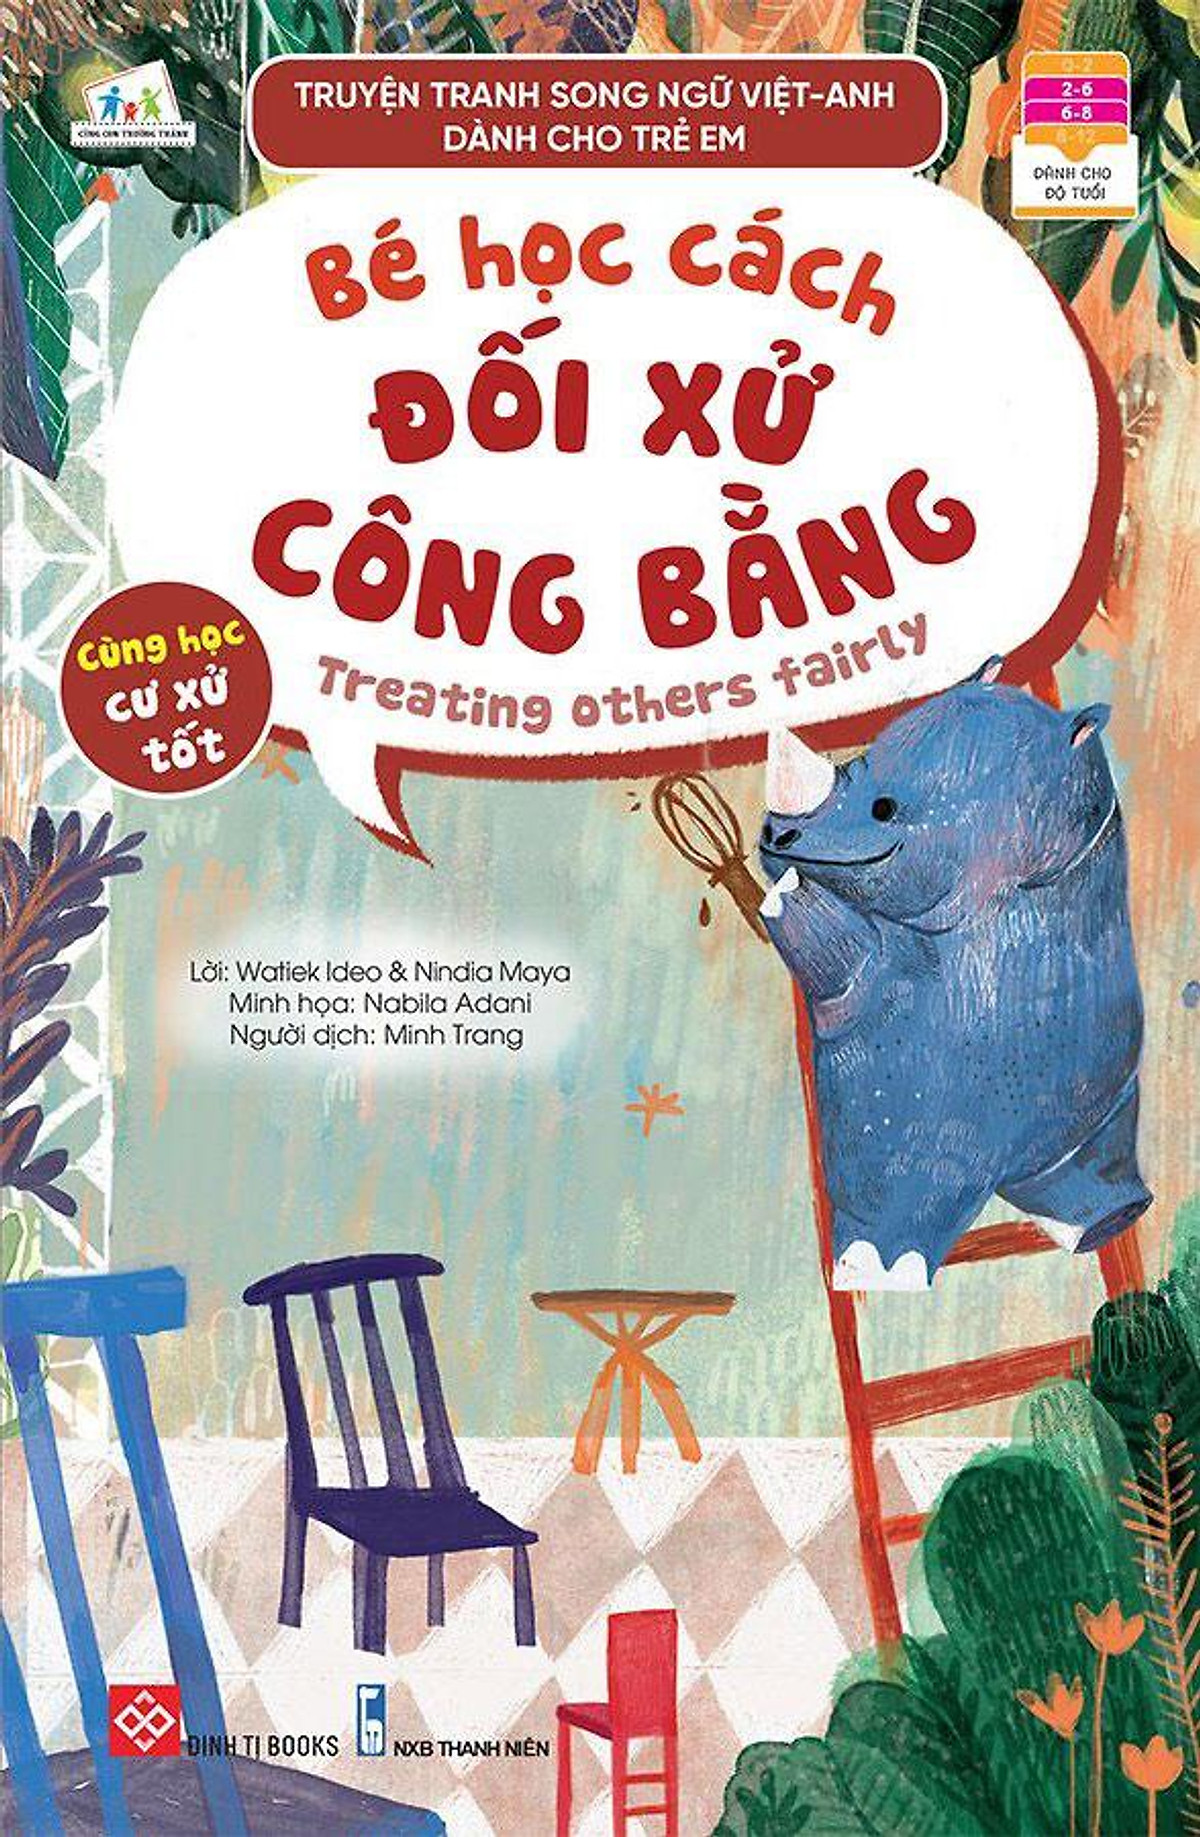 Truyện tranh song ngữ Việt-Anh dành cho trẻ em - Cùng học cư xử tốt- Bé học cách đối xử công bằng - Treating others fairly